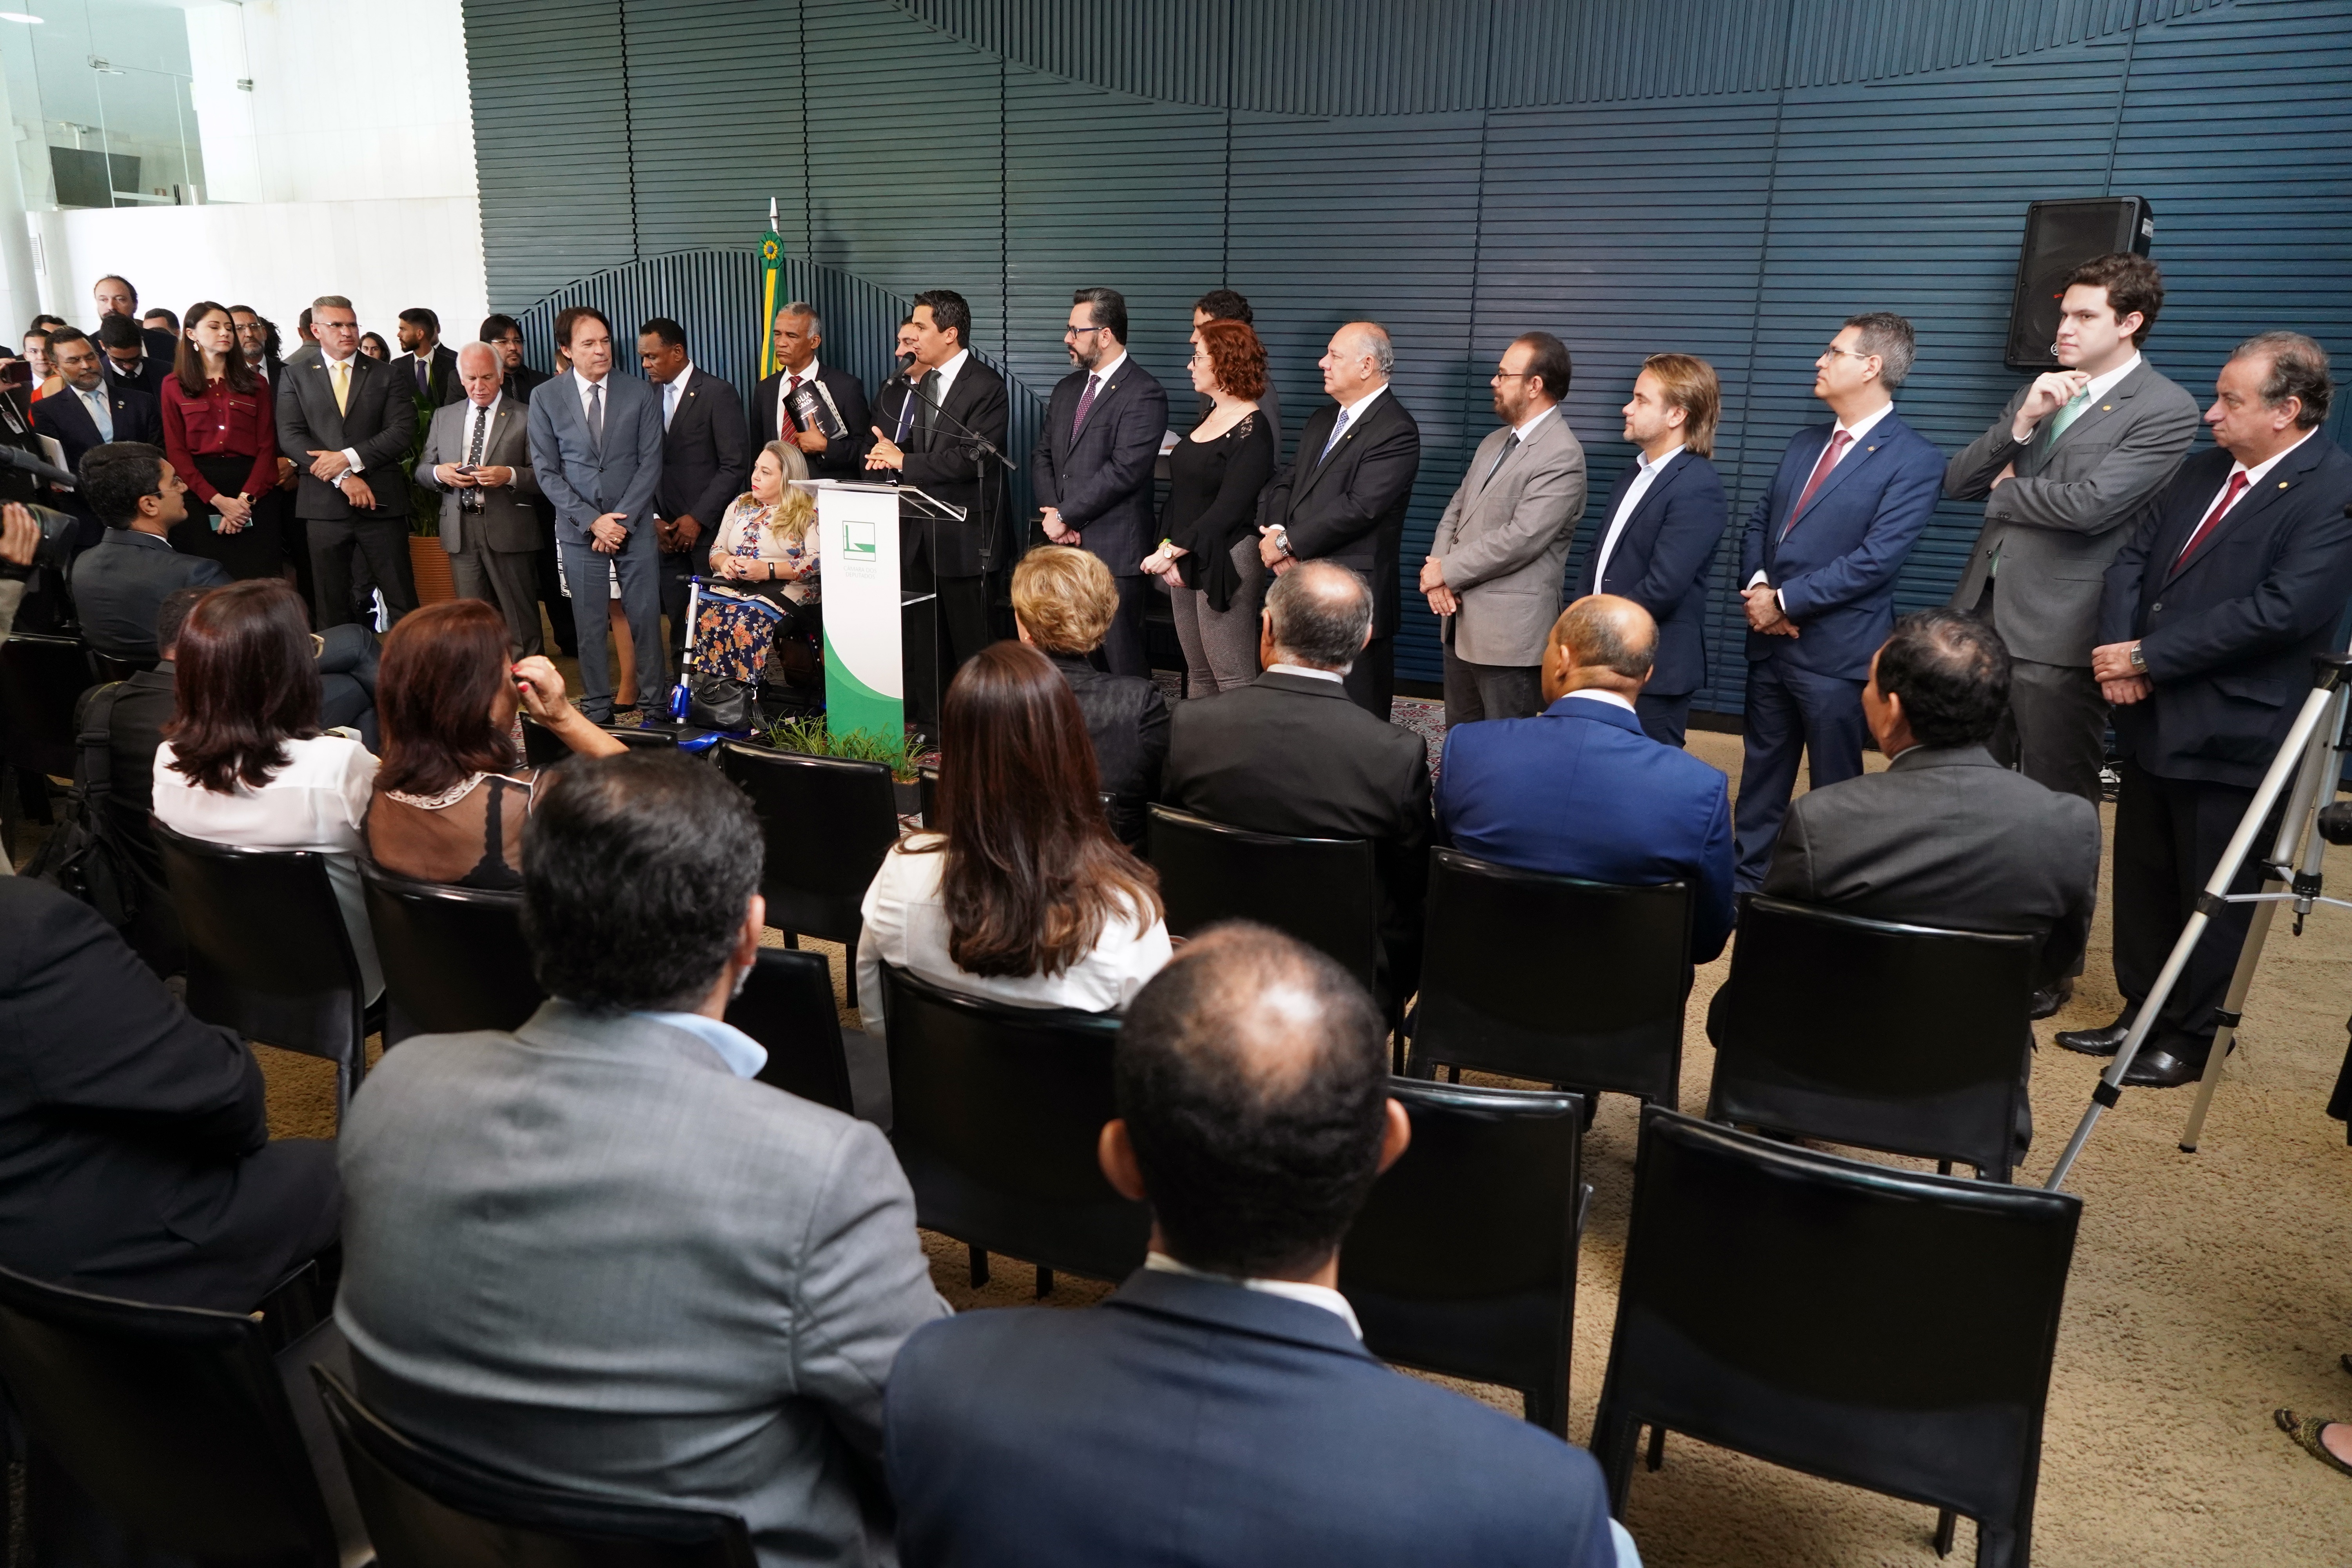 Pablo Valadares/Câmara dos Deputados / Lançamento da frenteDeputados e líderes religiosos prestigiaram o relançamento da Frente Parlamentar na Câmara